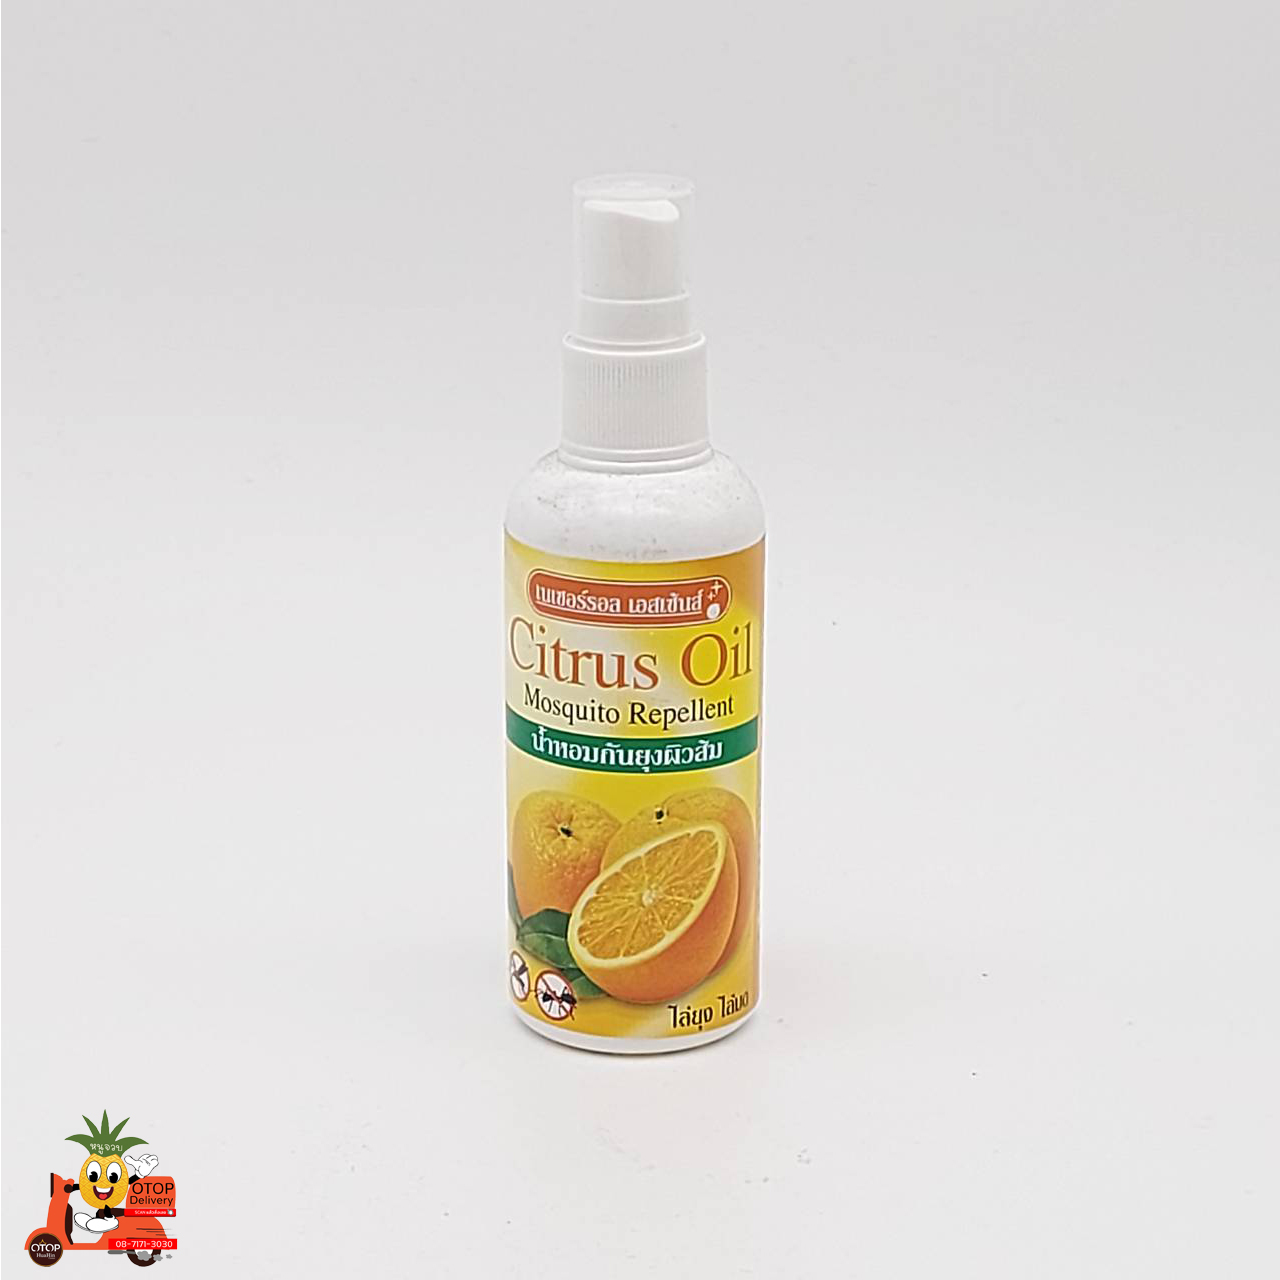 น้ำหอมกันยุงผิวส้ม (Citus) 110 ml.